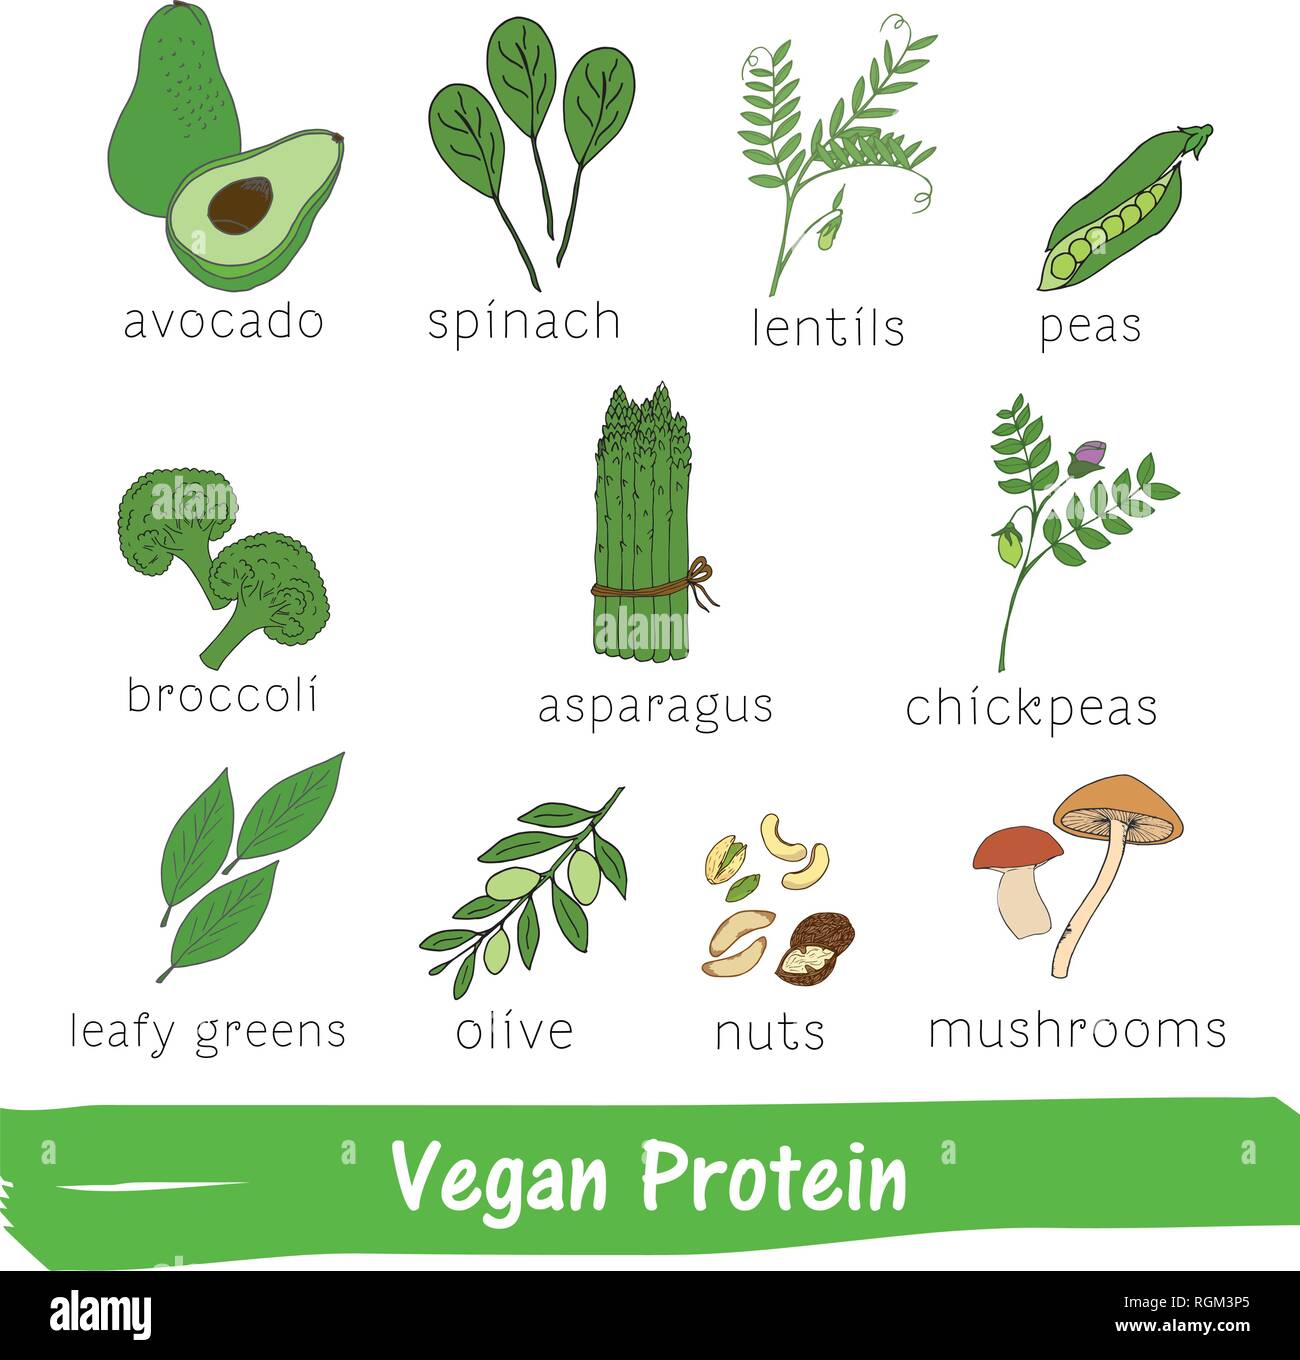 Obst und Gemüse mit einem hohen Gehalt an Vegan Protein. Hand gezeichnet Vitamin einstellen Stock Vektor